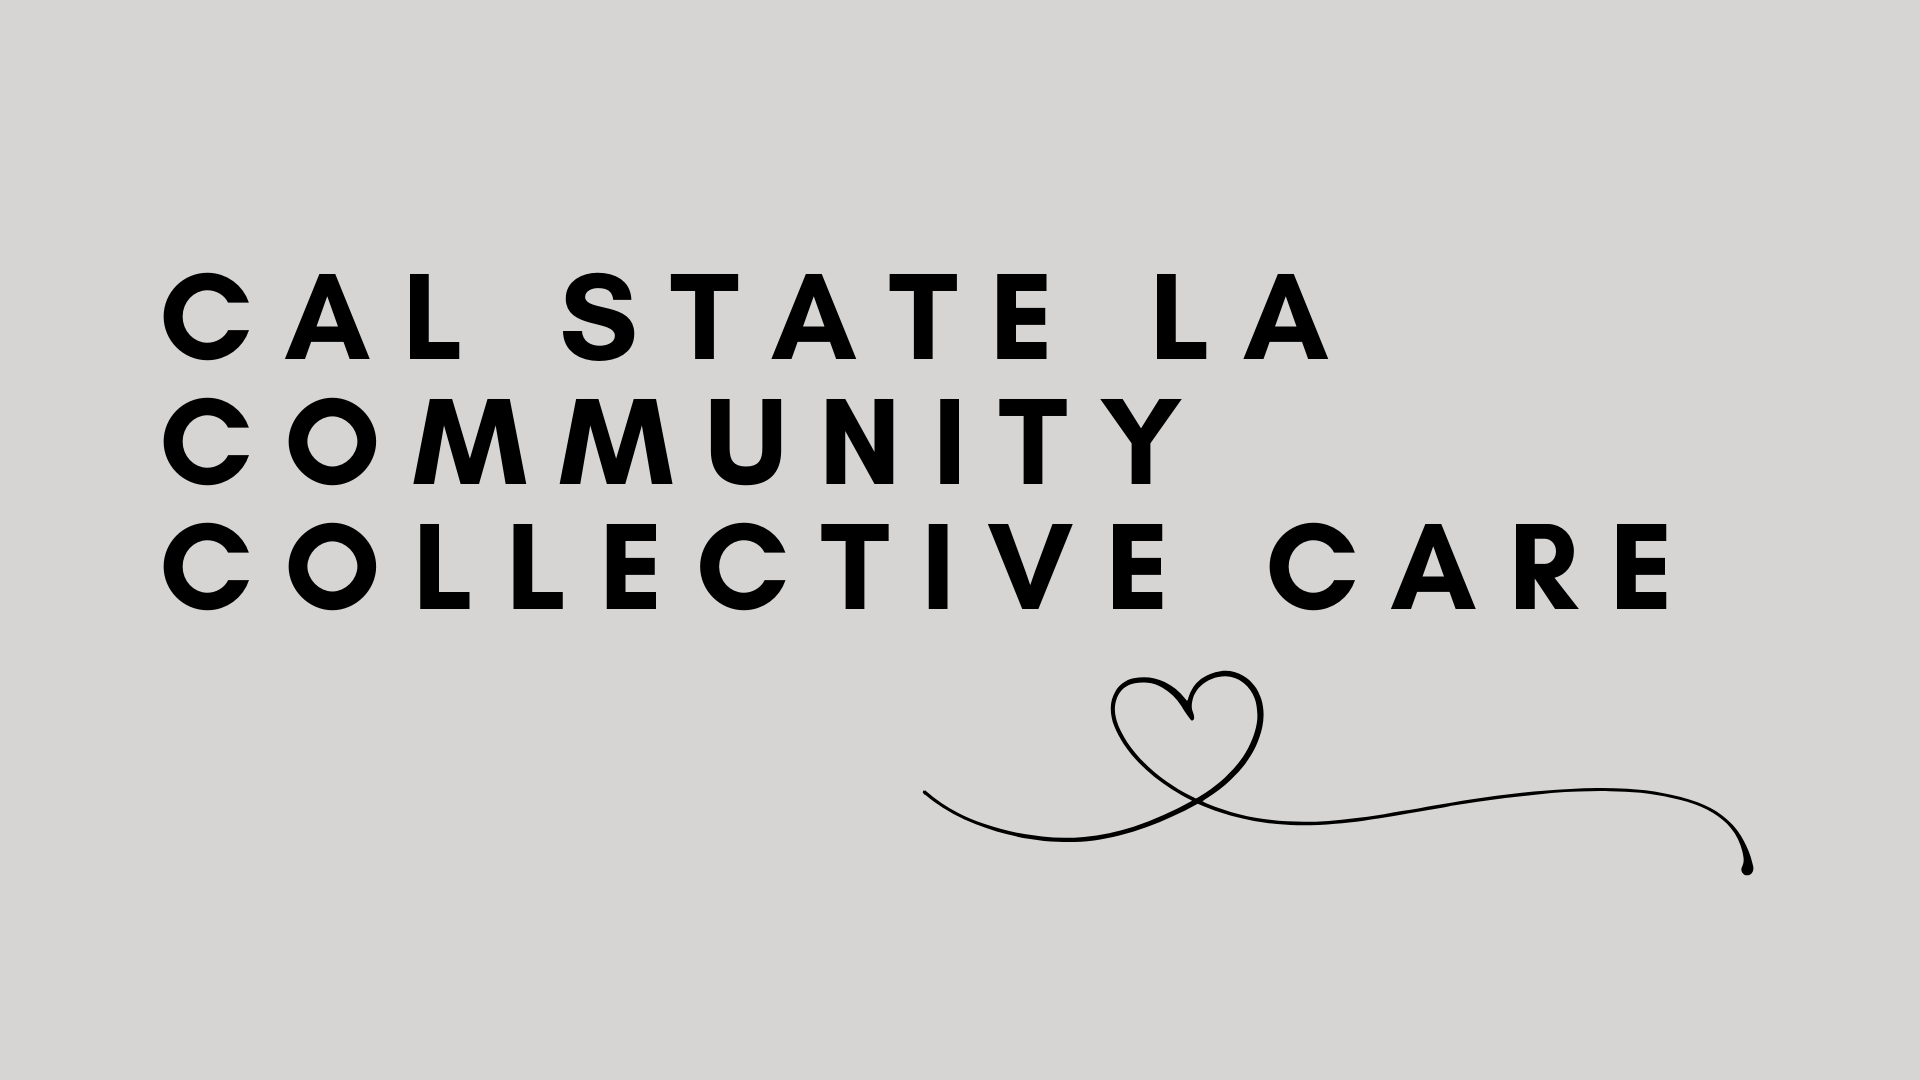 Cal State LA Community Collective Care